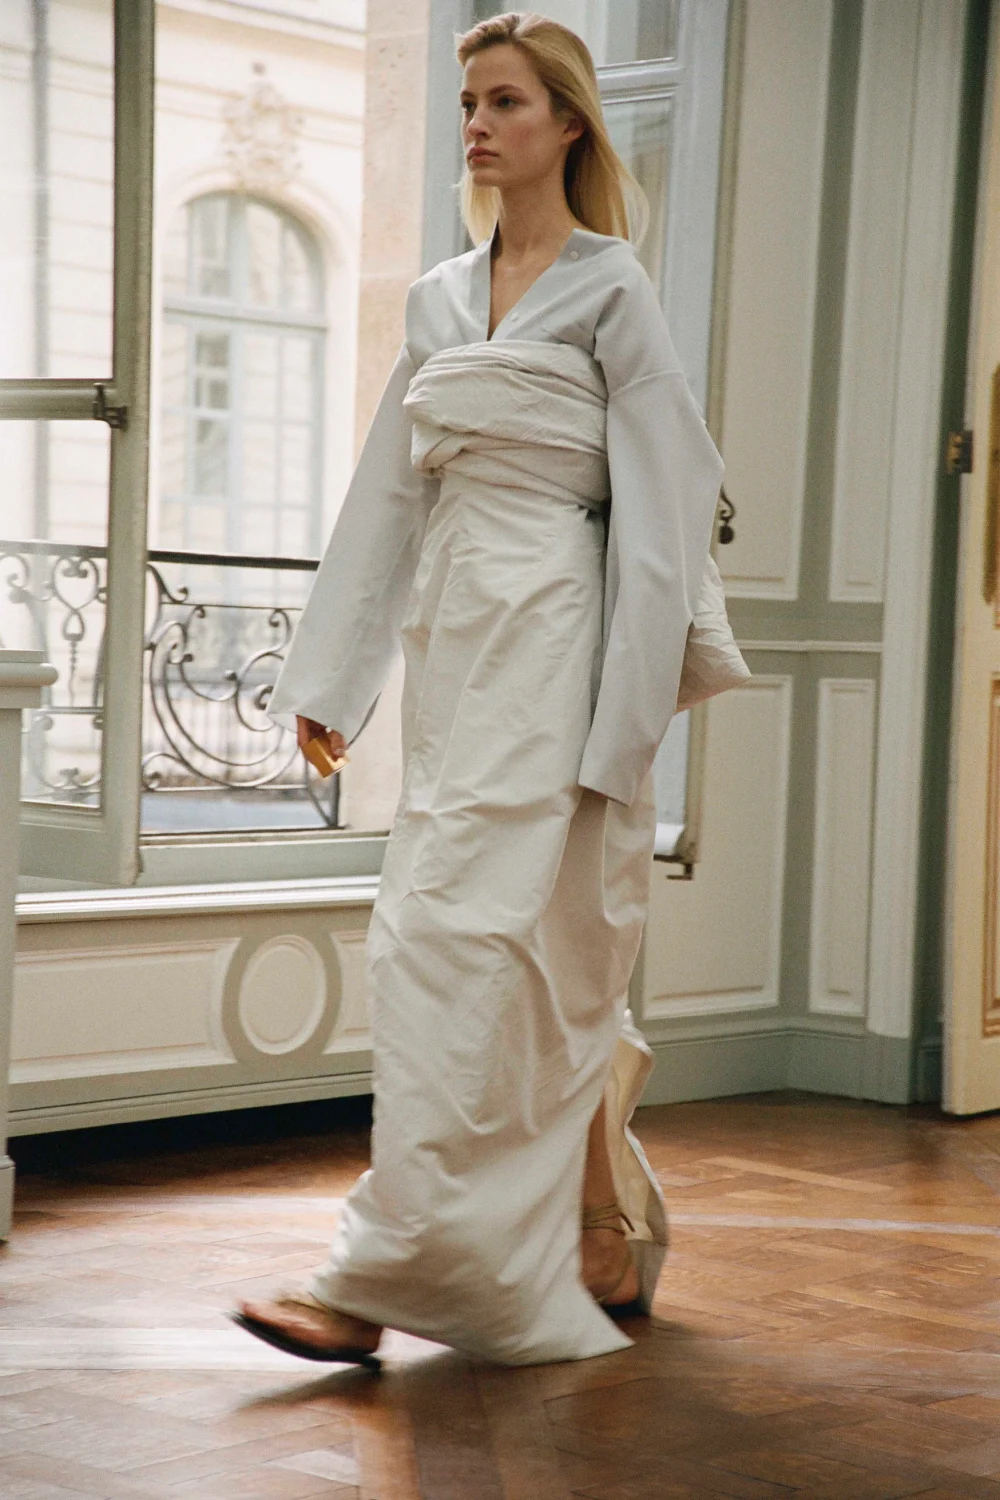 Варфоломеевская ночь, японские мотивы и Шер на Неделе моды в Париже